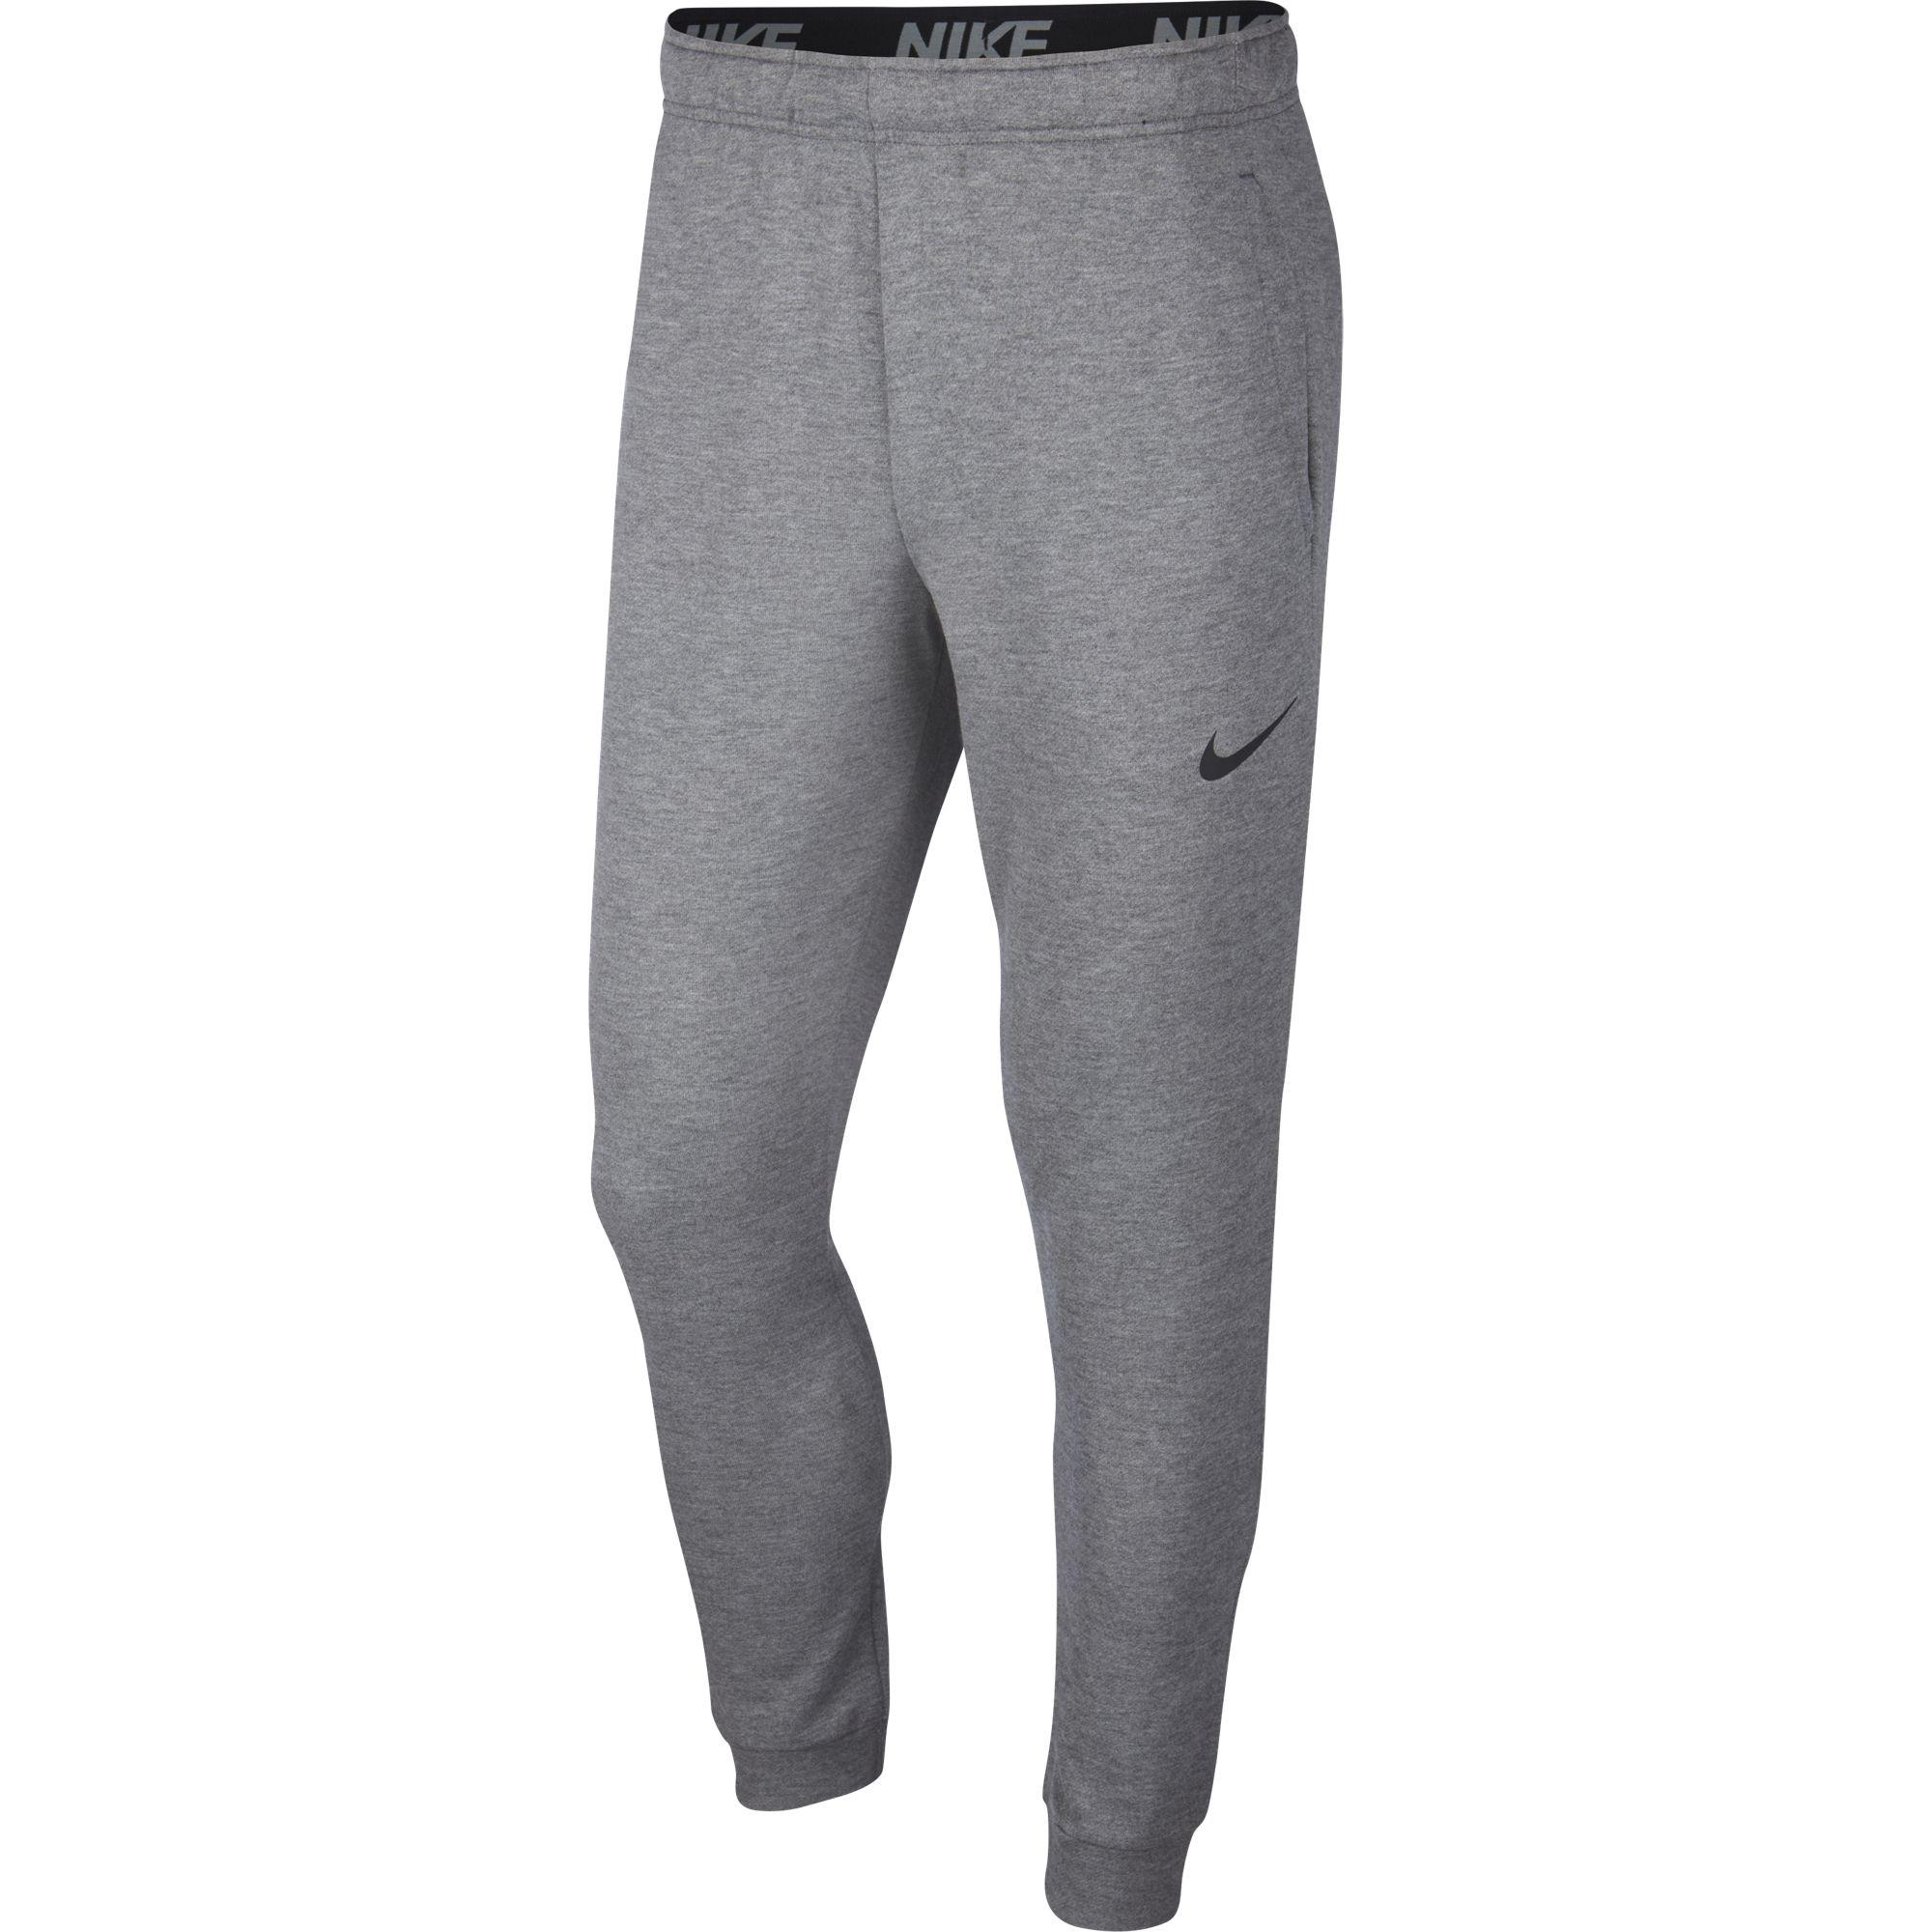 Nike Mens Dri-FIT Training Pant - Charcoal Heather - Tennisnuts.com